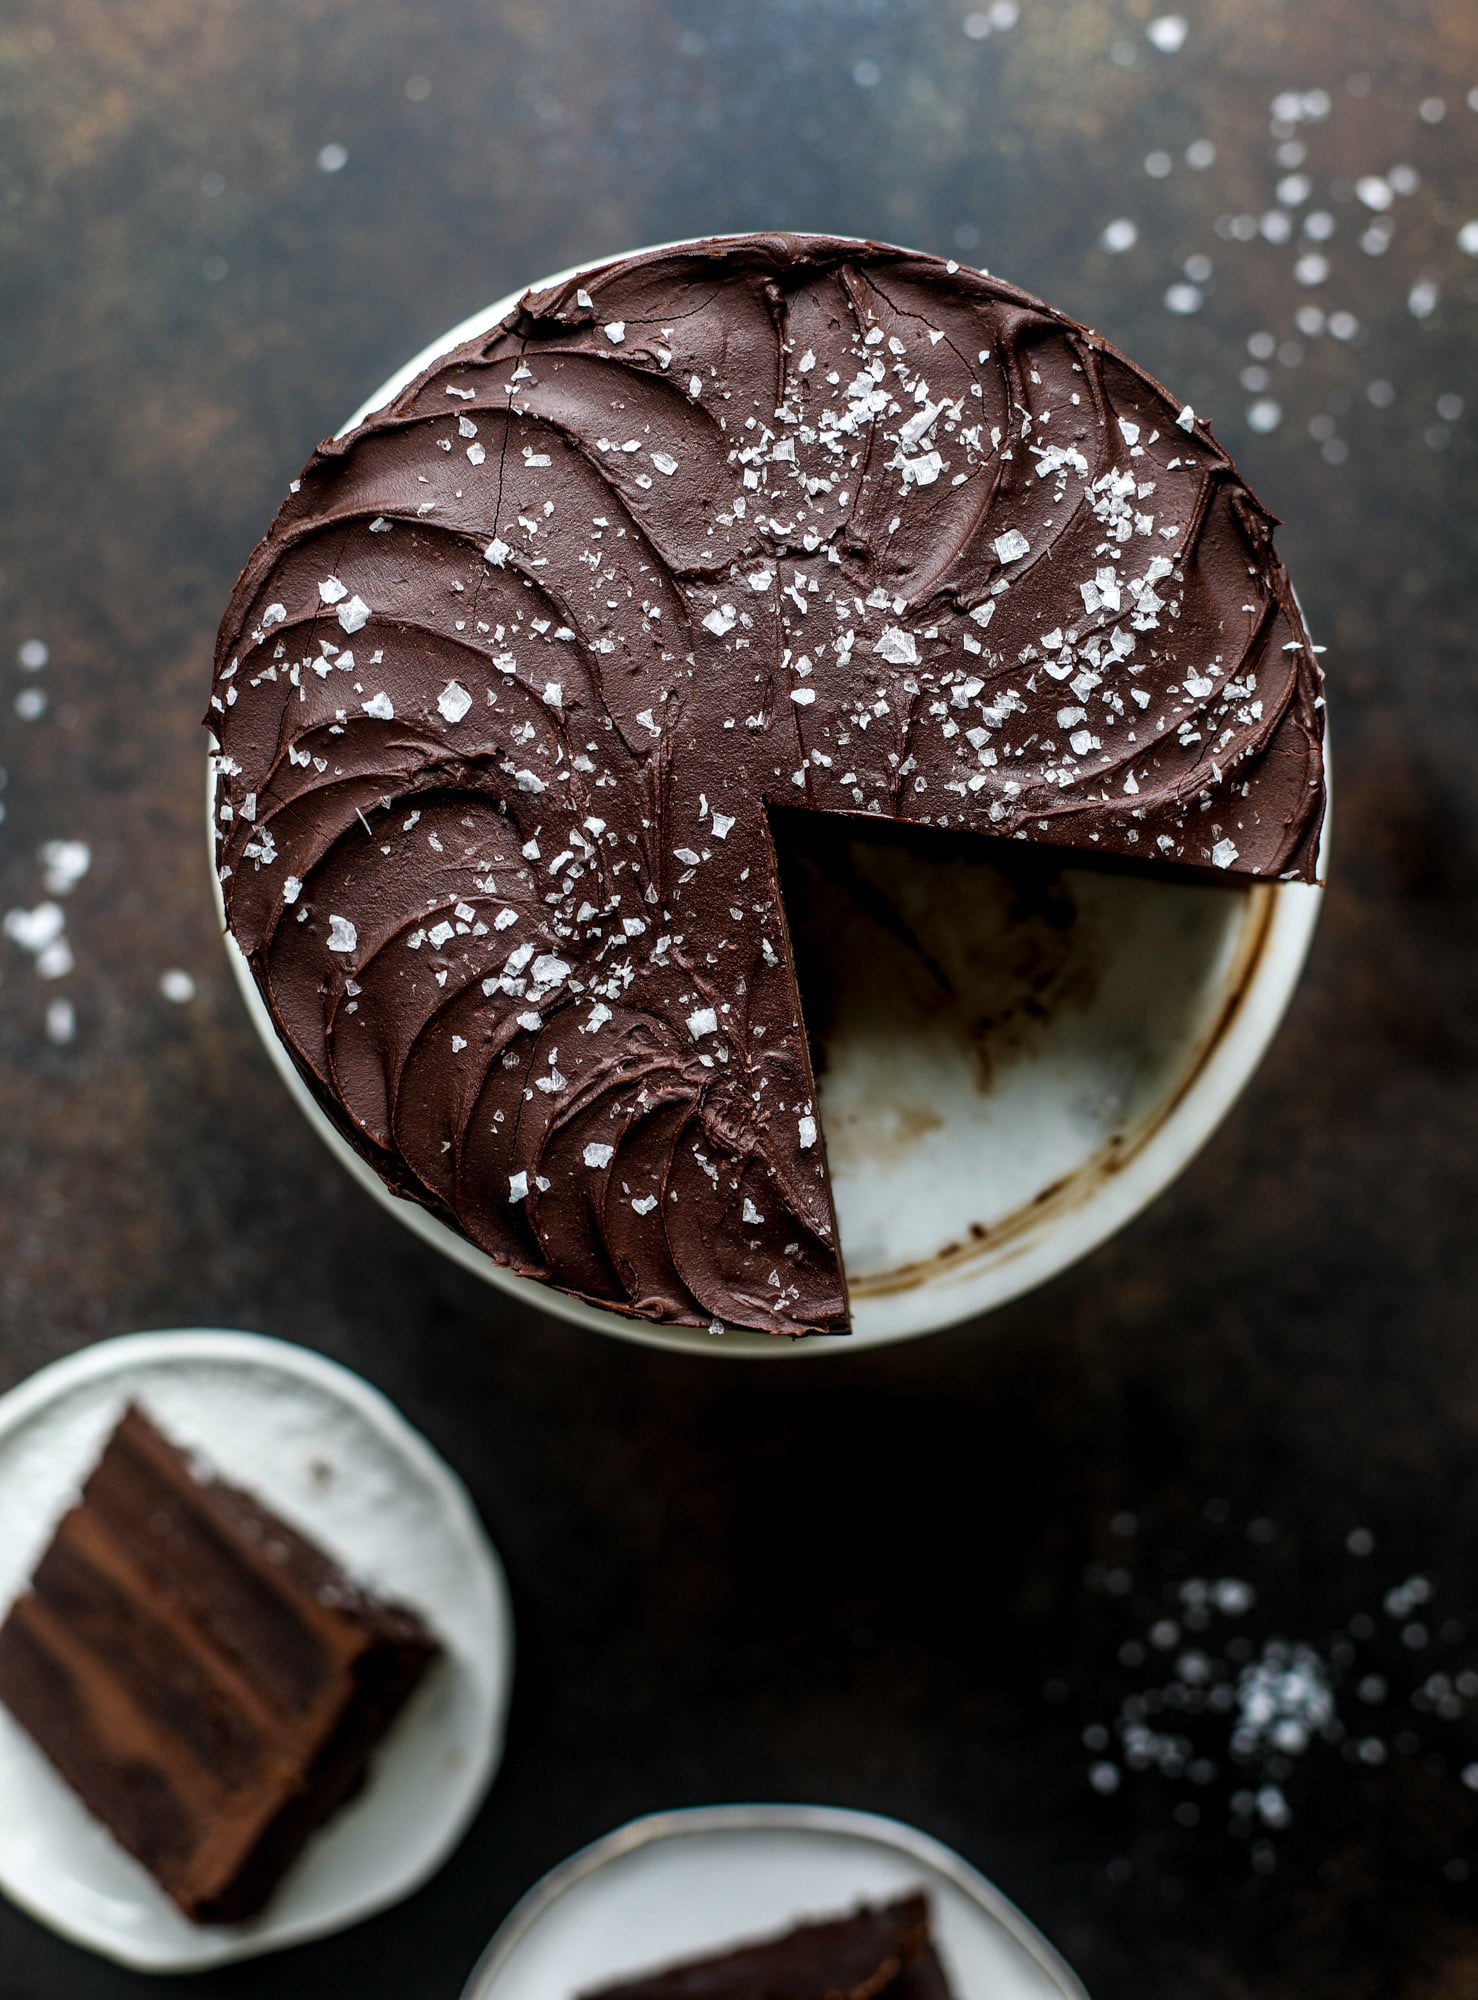 这个咸黑巧克力黑啤蛋糕绝对是神圣的!它极其丰富，非常适合人群或派对。南瓜烈性面糊烘烤成蓬松的后半部分，再裹上一层超级松软的巧克力甘纳许。完美的巧克力爱好者!I howsweeteats.com #黑巧克力#黑啤#蛋糕#咸